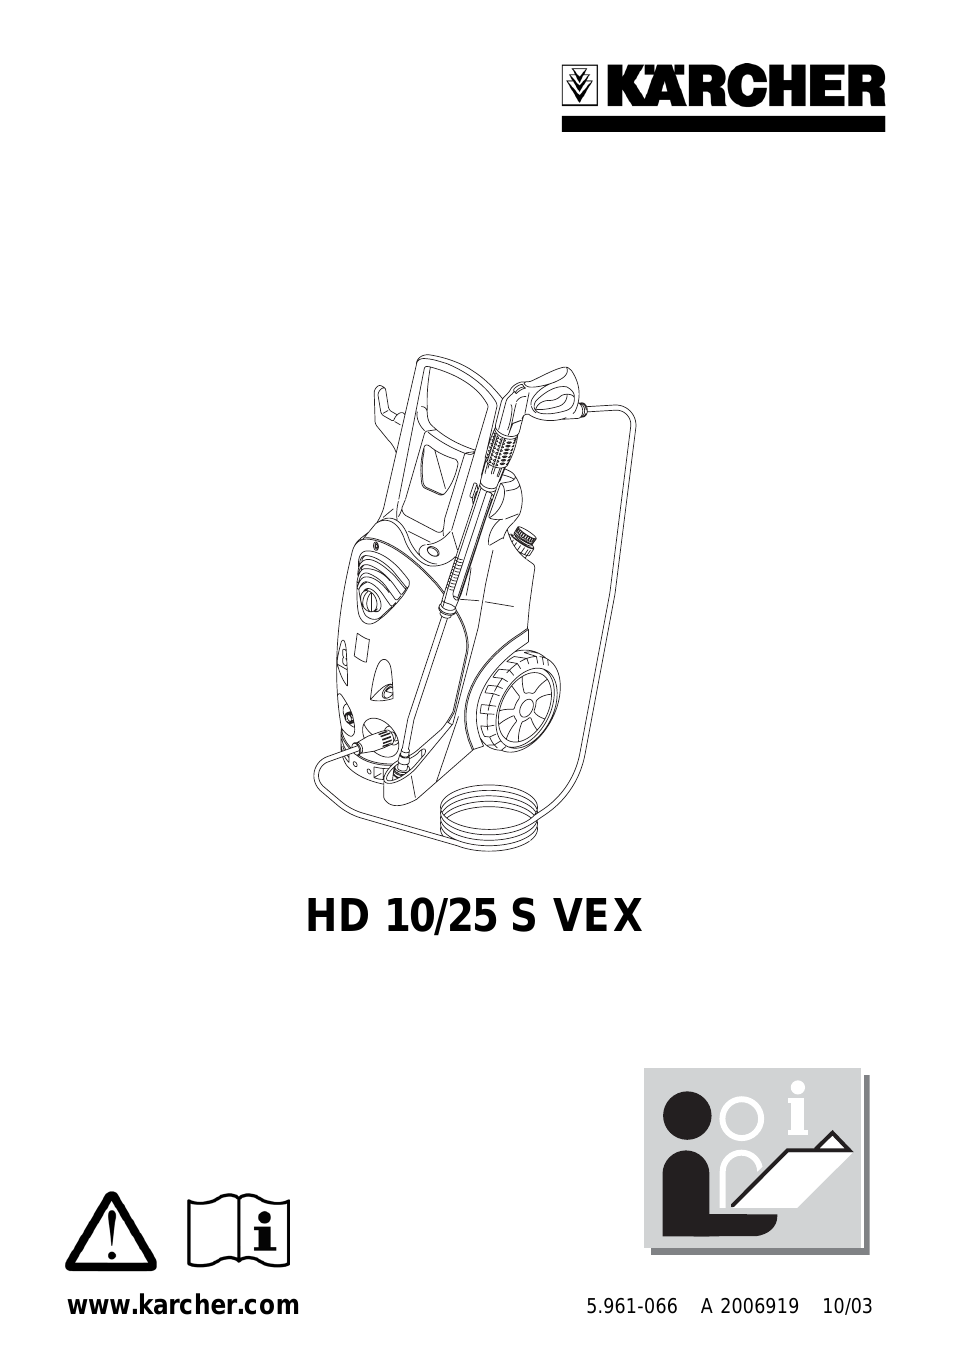 HD 10/25 S VEX